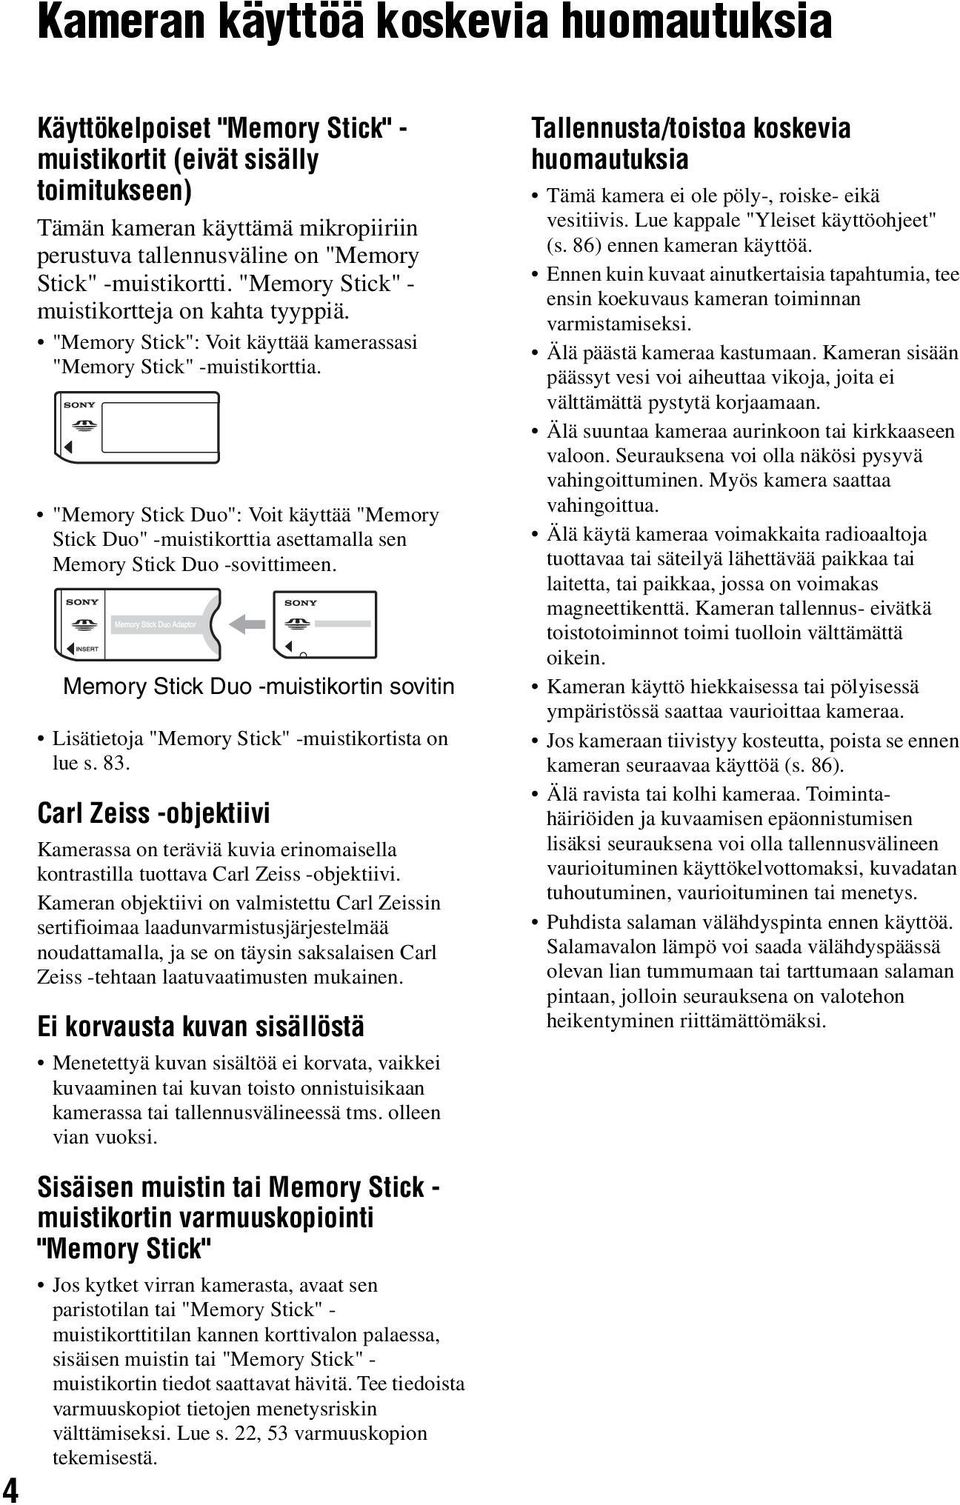 "Memory Stick Duo": Voit käyttää "Memory Stick Duo" -muistikorttia asettamalla sen Memory Stick Duo -sovittimeen.